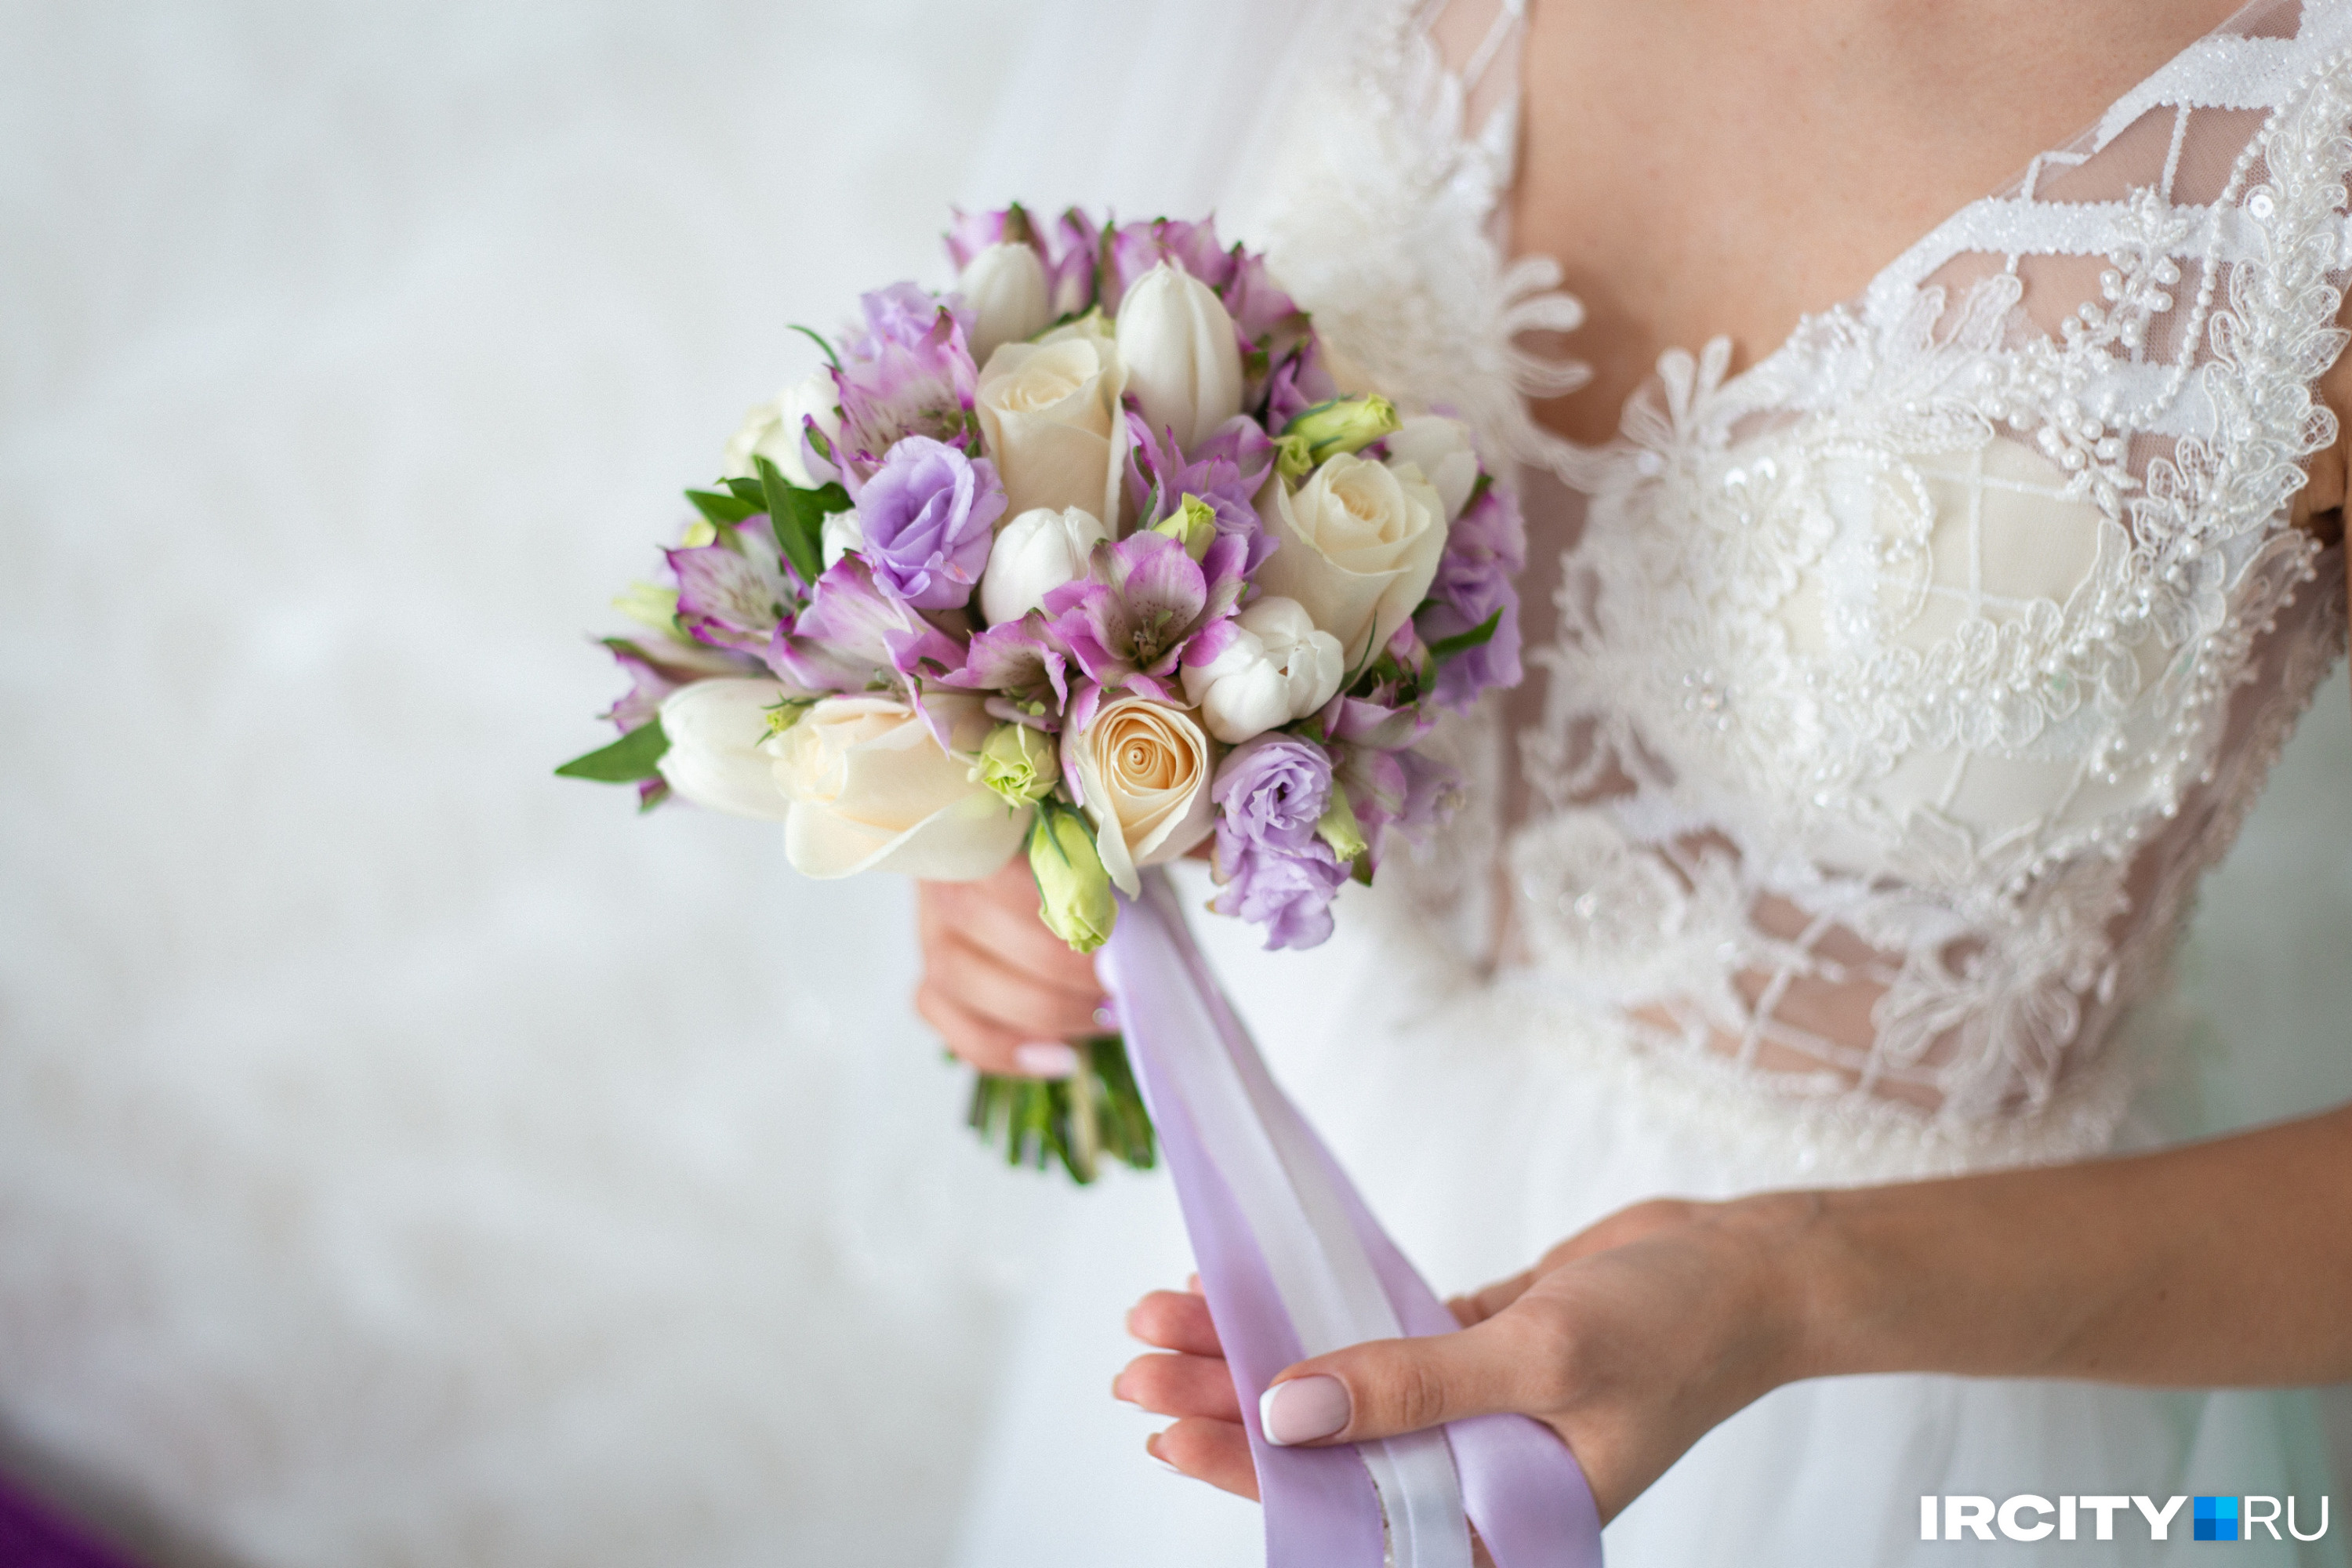 Красивую дату для свадьбы выбрали 157 пар в Иркутской области